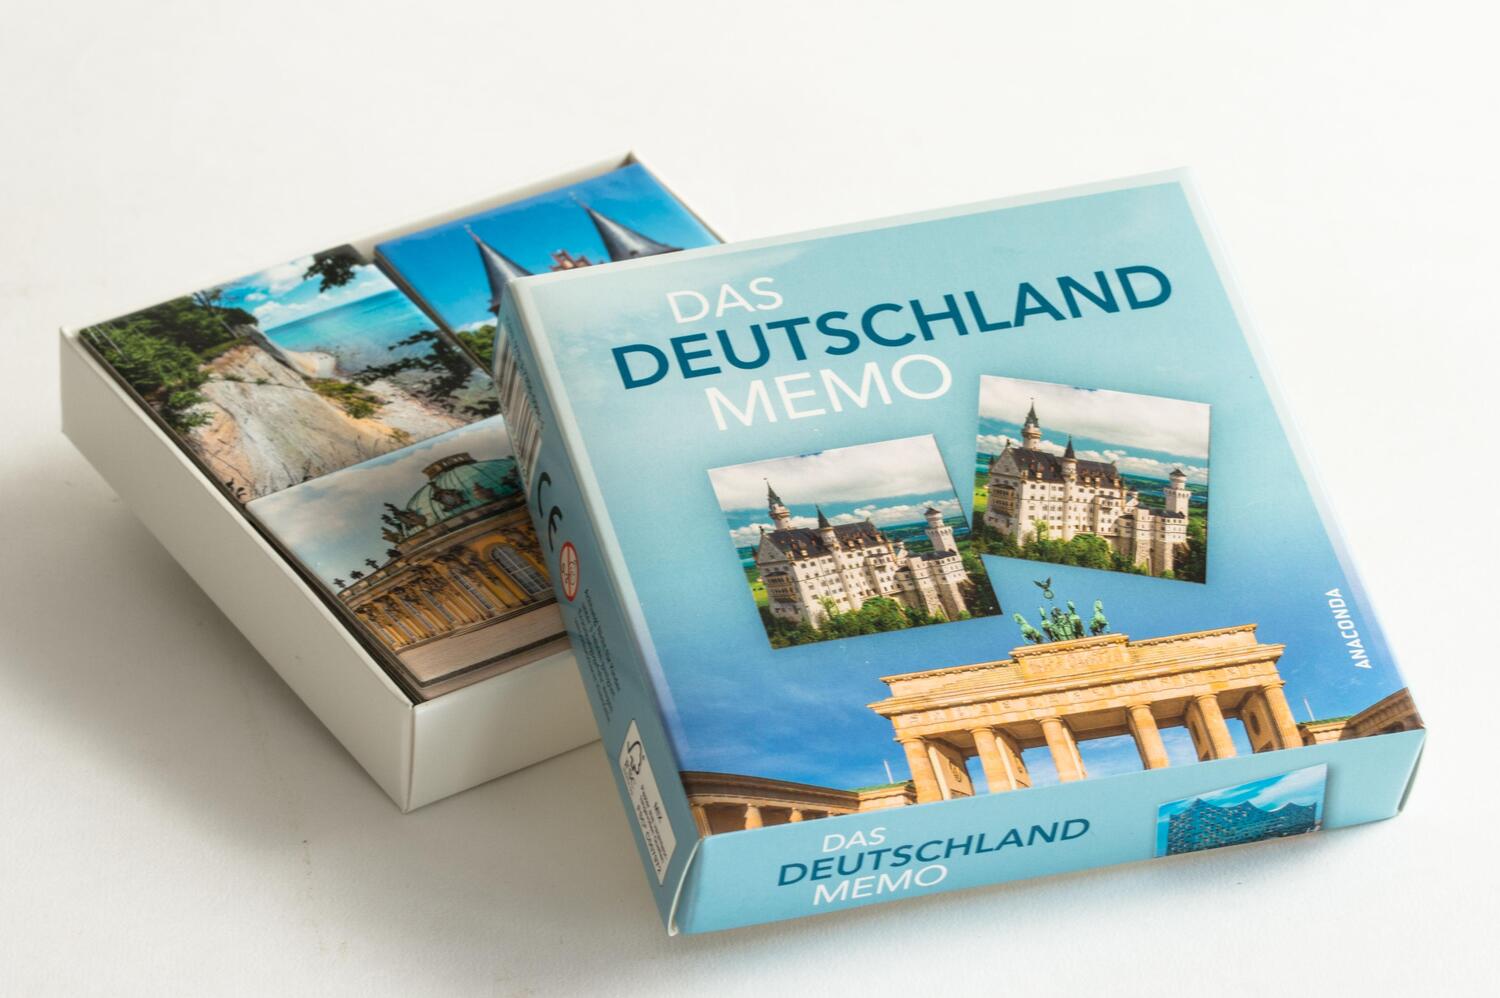 Bild: 9783730609965 | Das Deutschland-Memo | Memo-Spiel mit 40 Spielkarten im Spielkarton